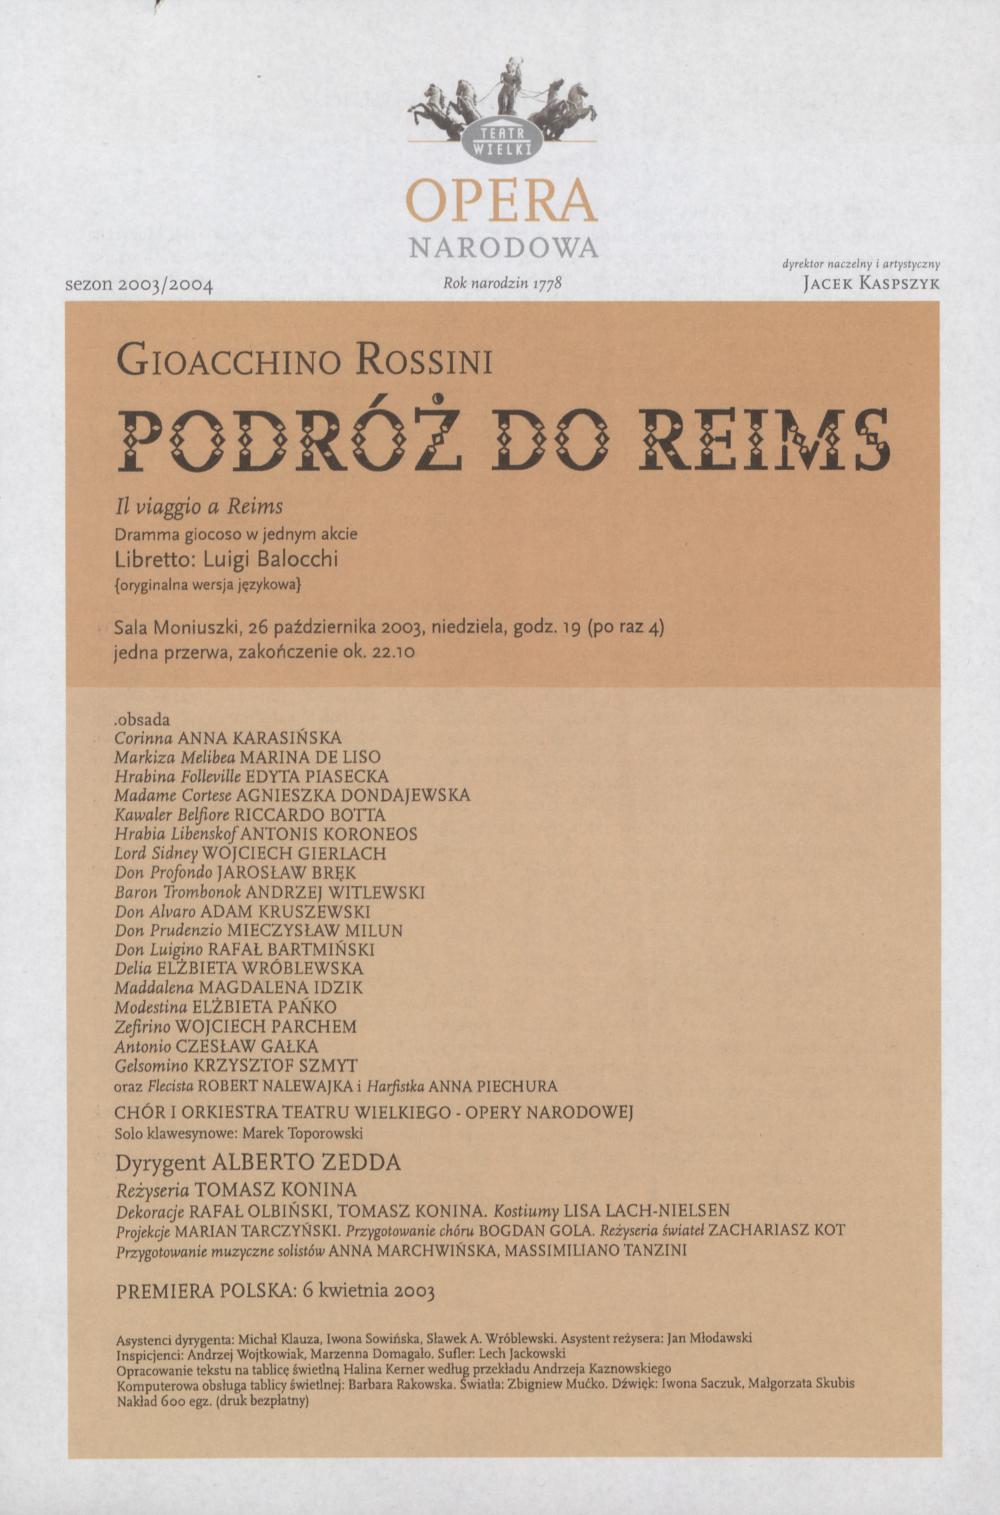 Wkładka obsadowa -„Podróż do Reims” Gioacchino Rossini 26-10-2003